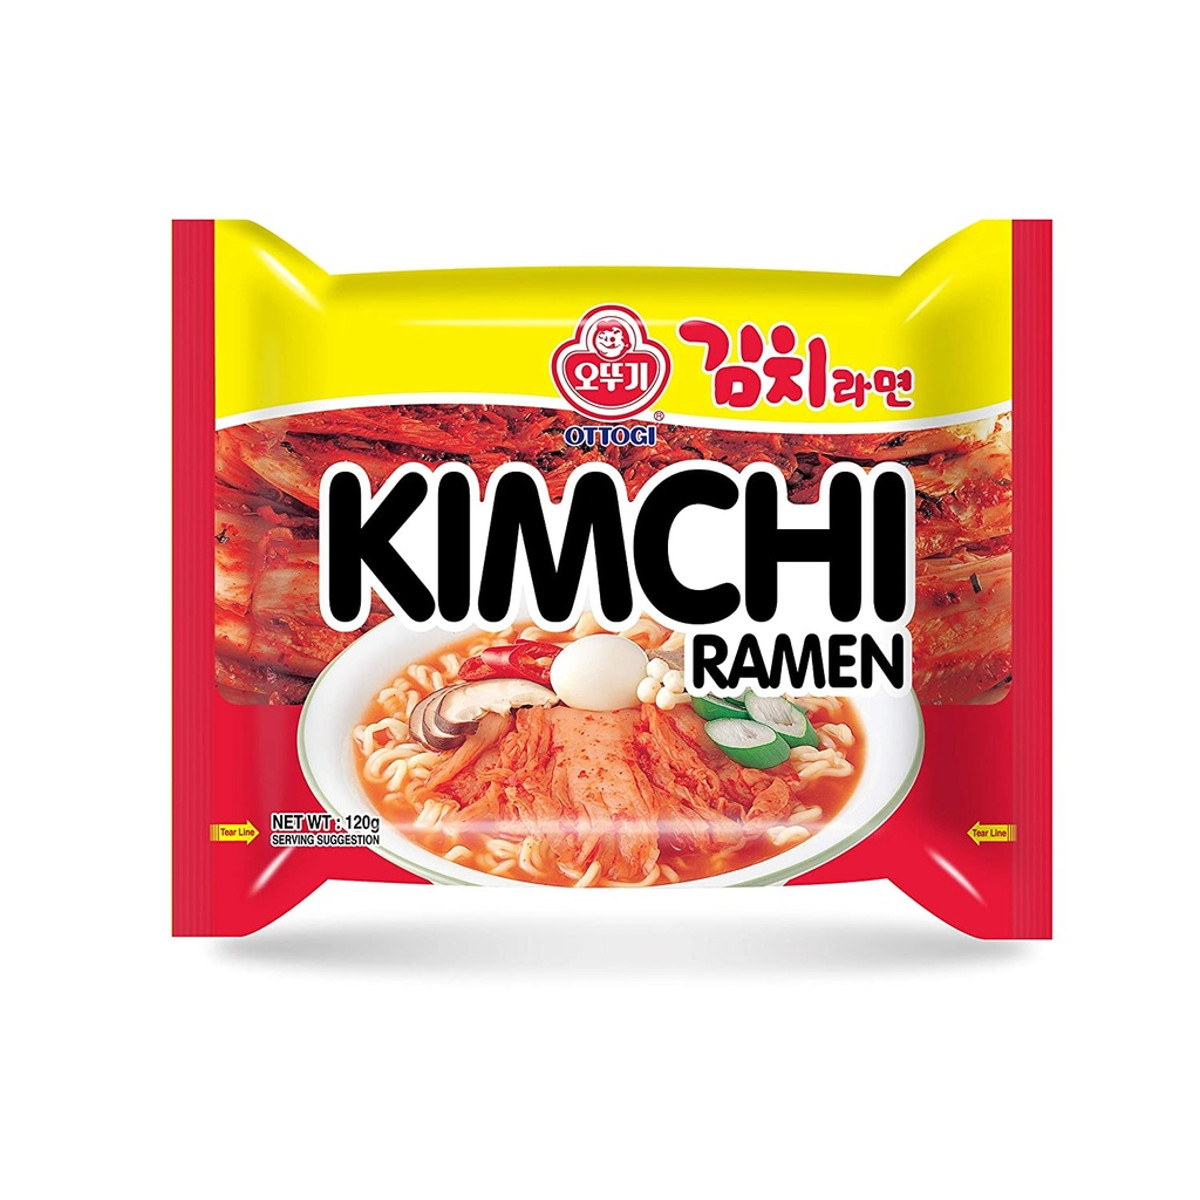 Lamen Coreano kimchi Ramen Picante Ottogi - 120g